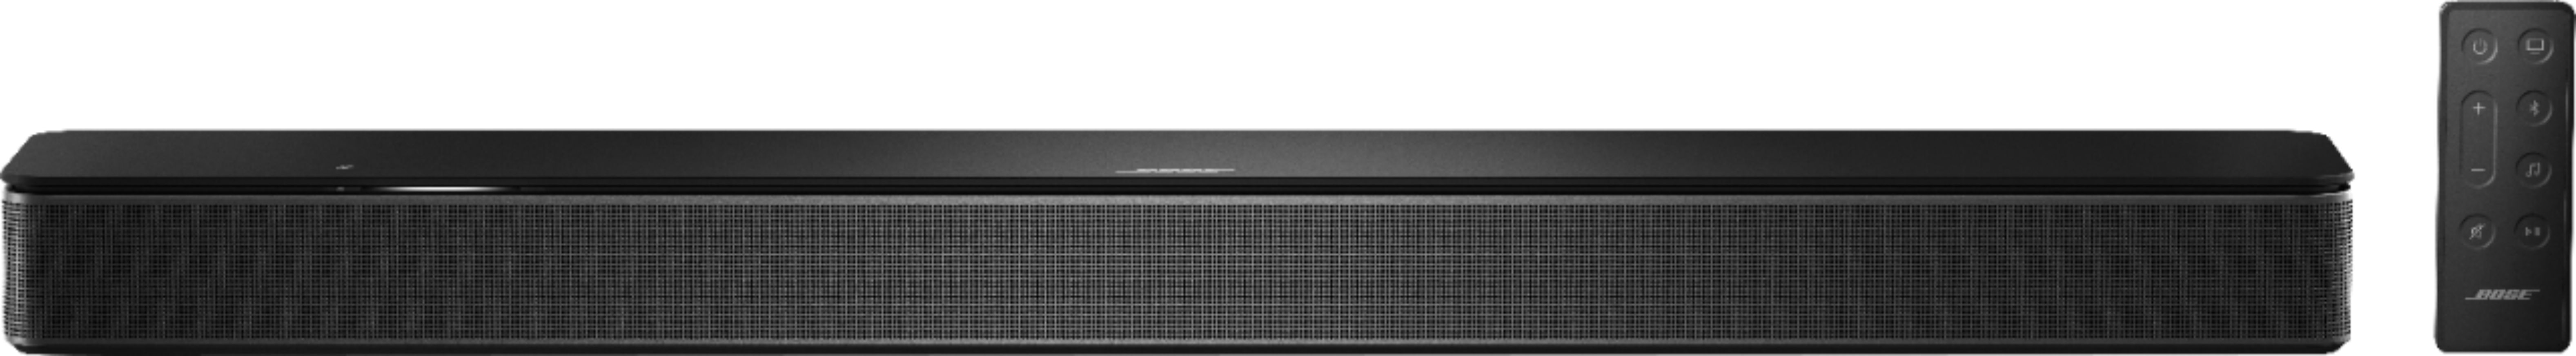 オーディオ機器 スピーカー Bose Smart Soundbar 300 with Voice Assistant Black 843299-1100 